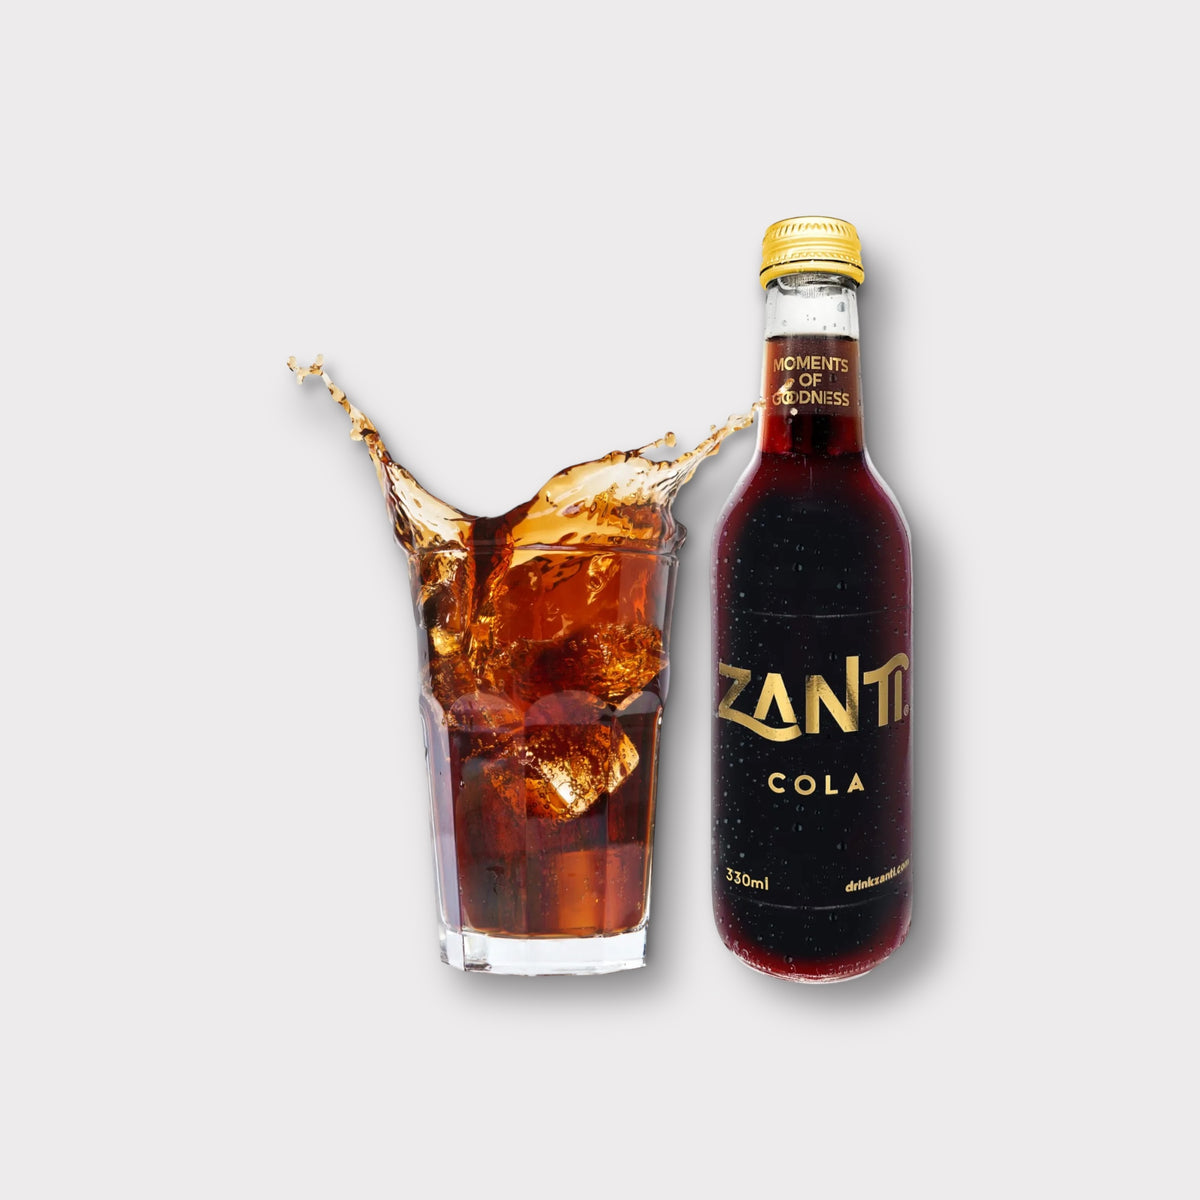 Zanti Cola